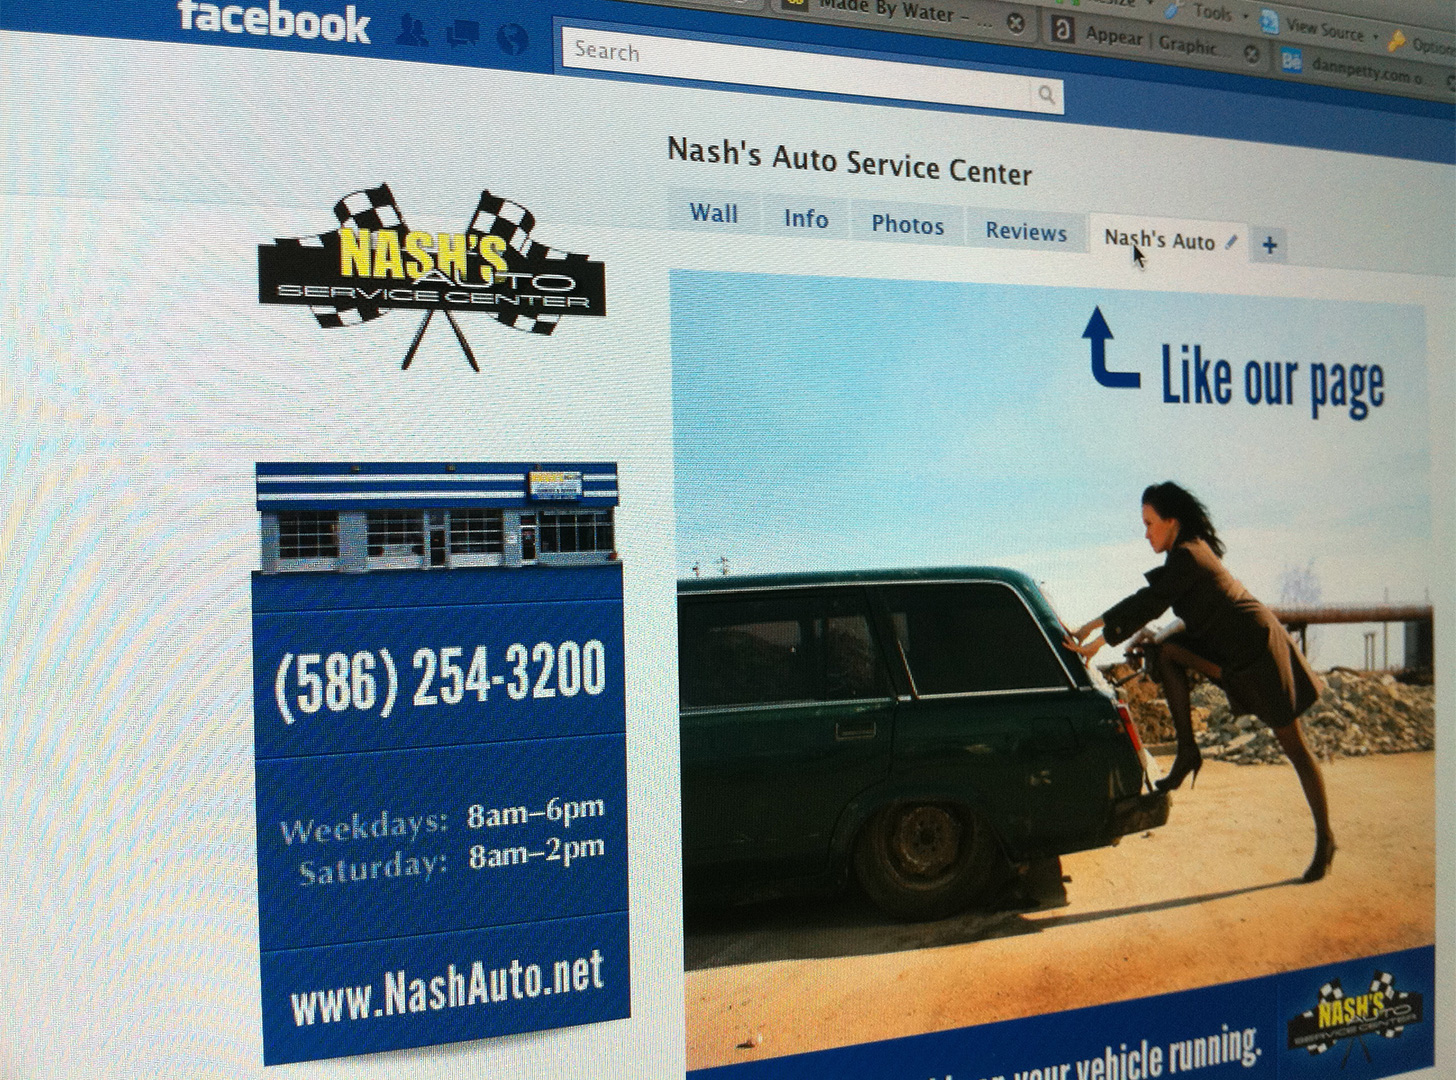 Nash's Auto Facebook Page Design